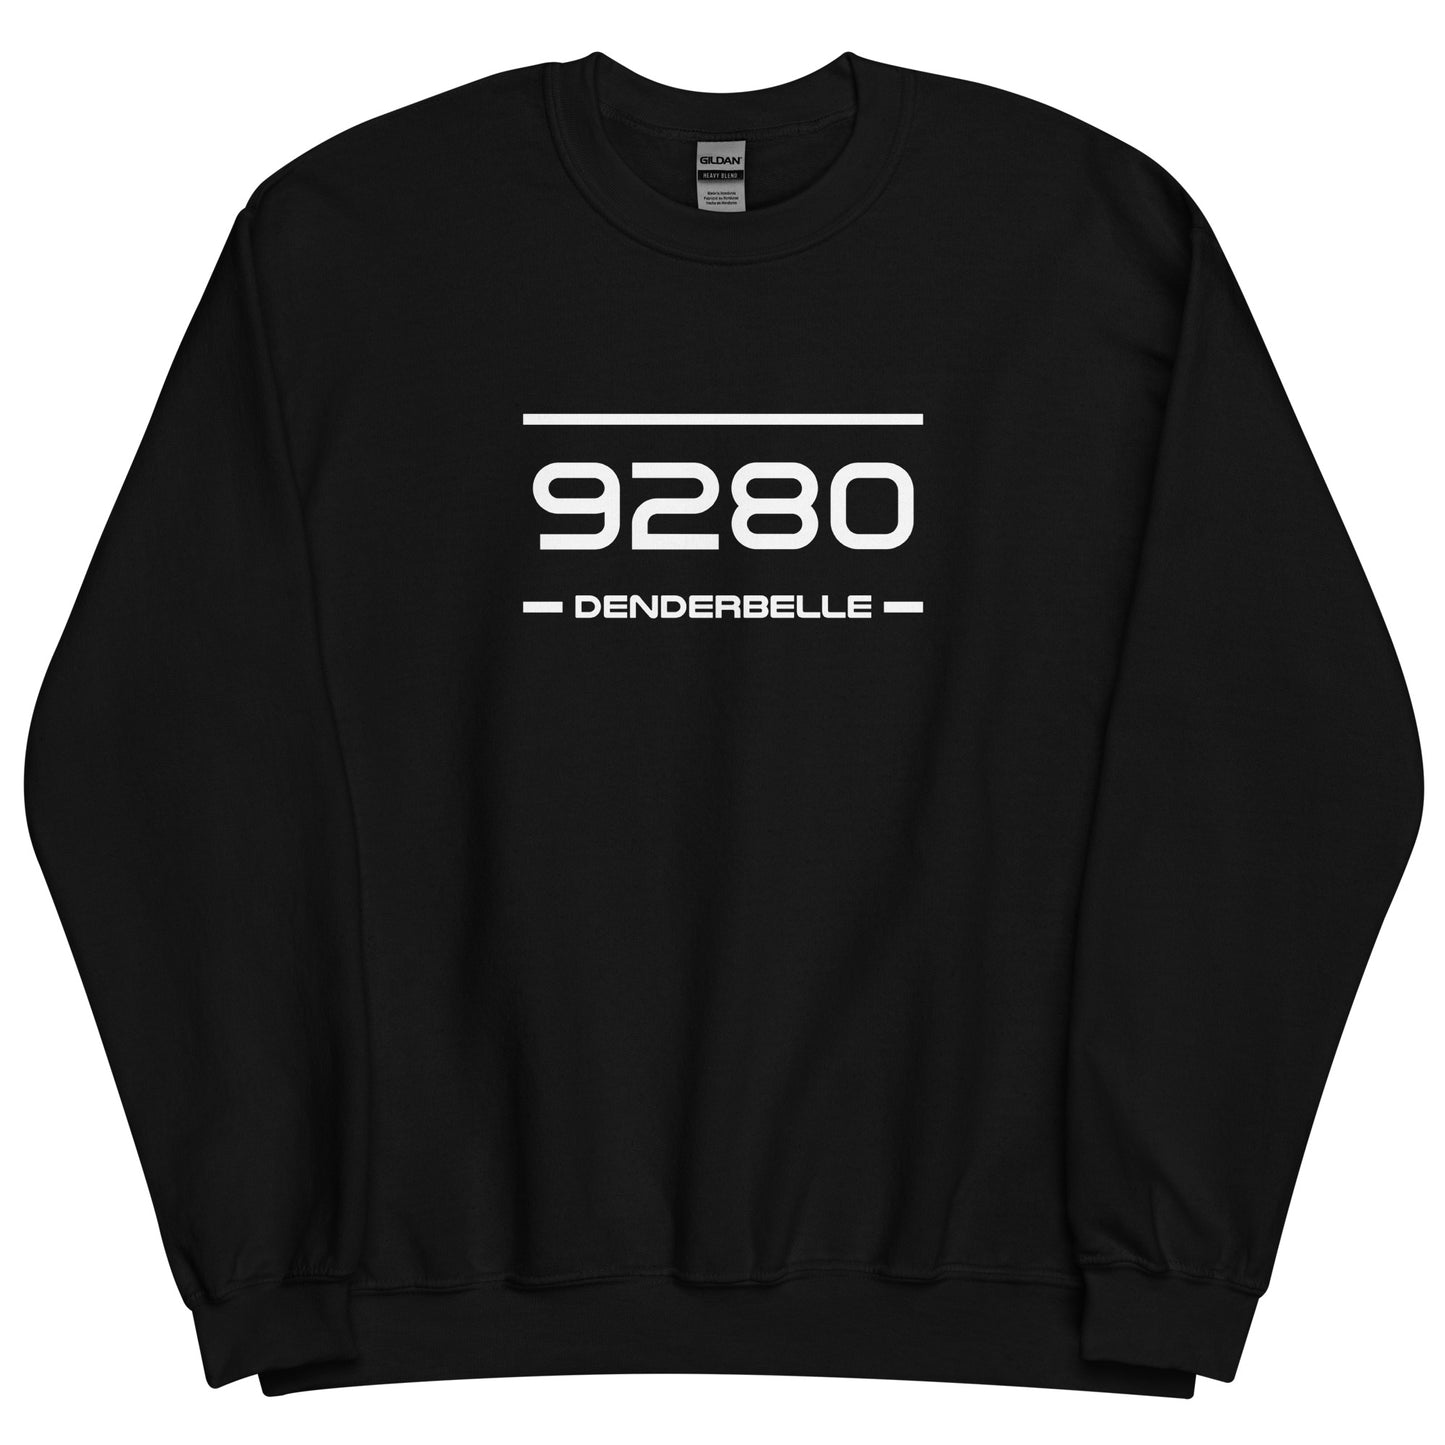 Sweater - 9280 - Denderbelle (M/V)